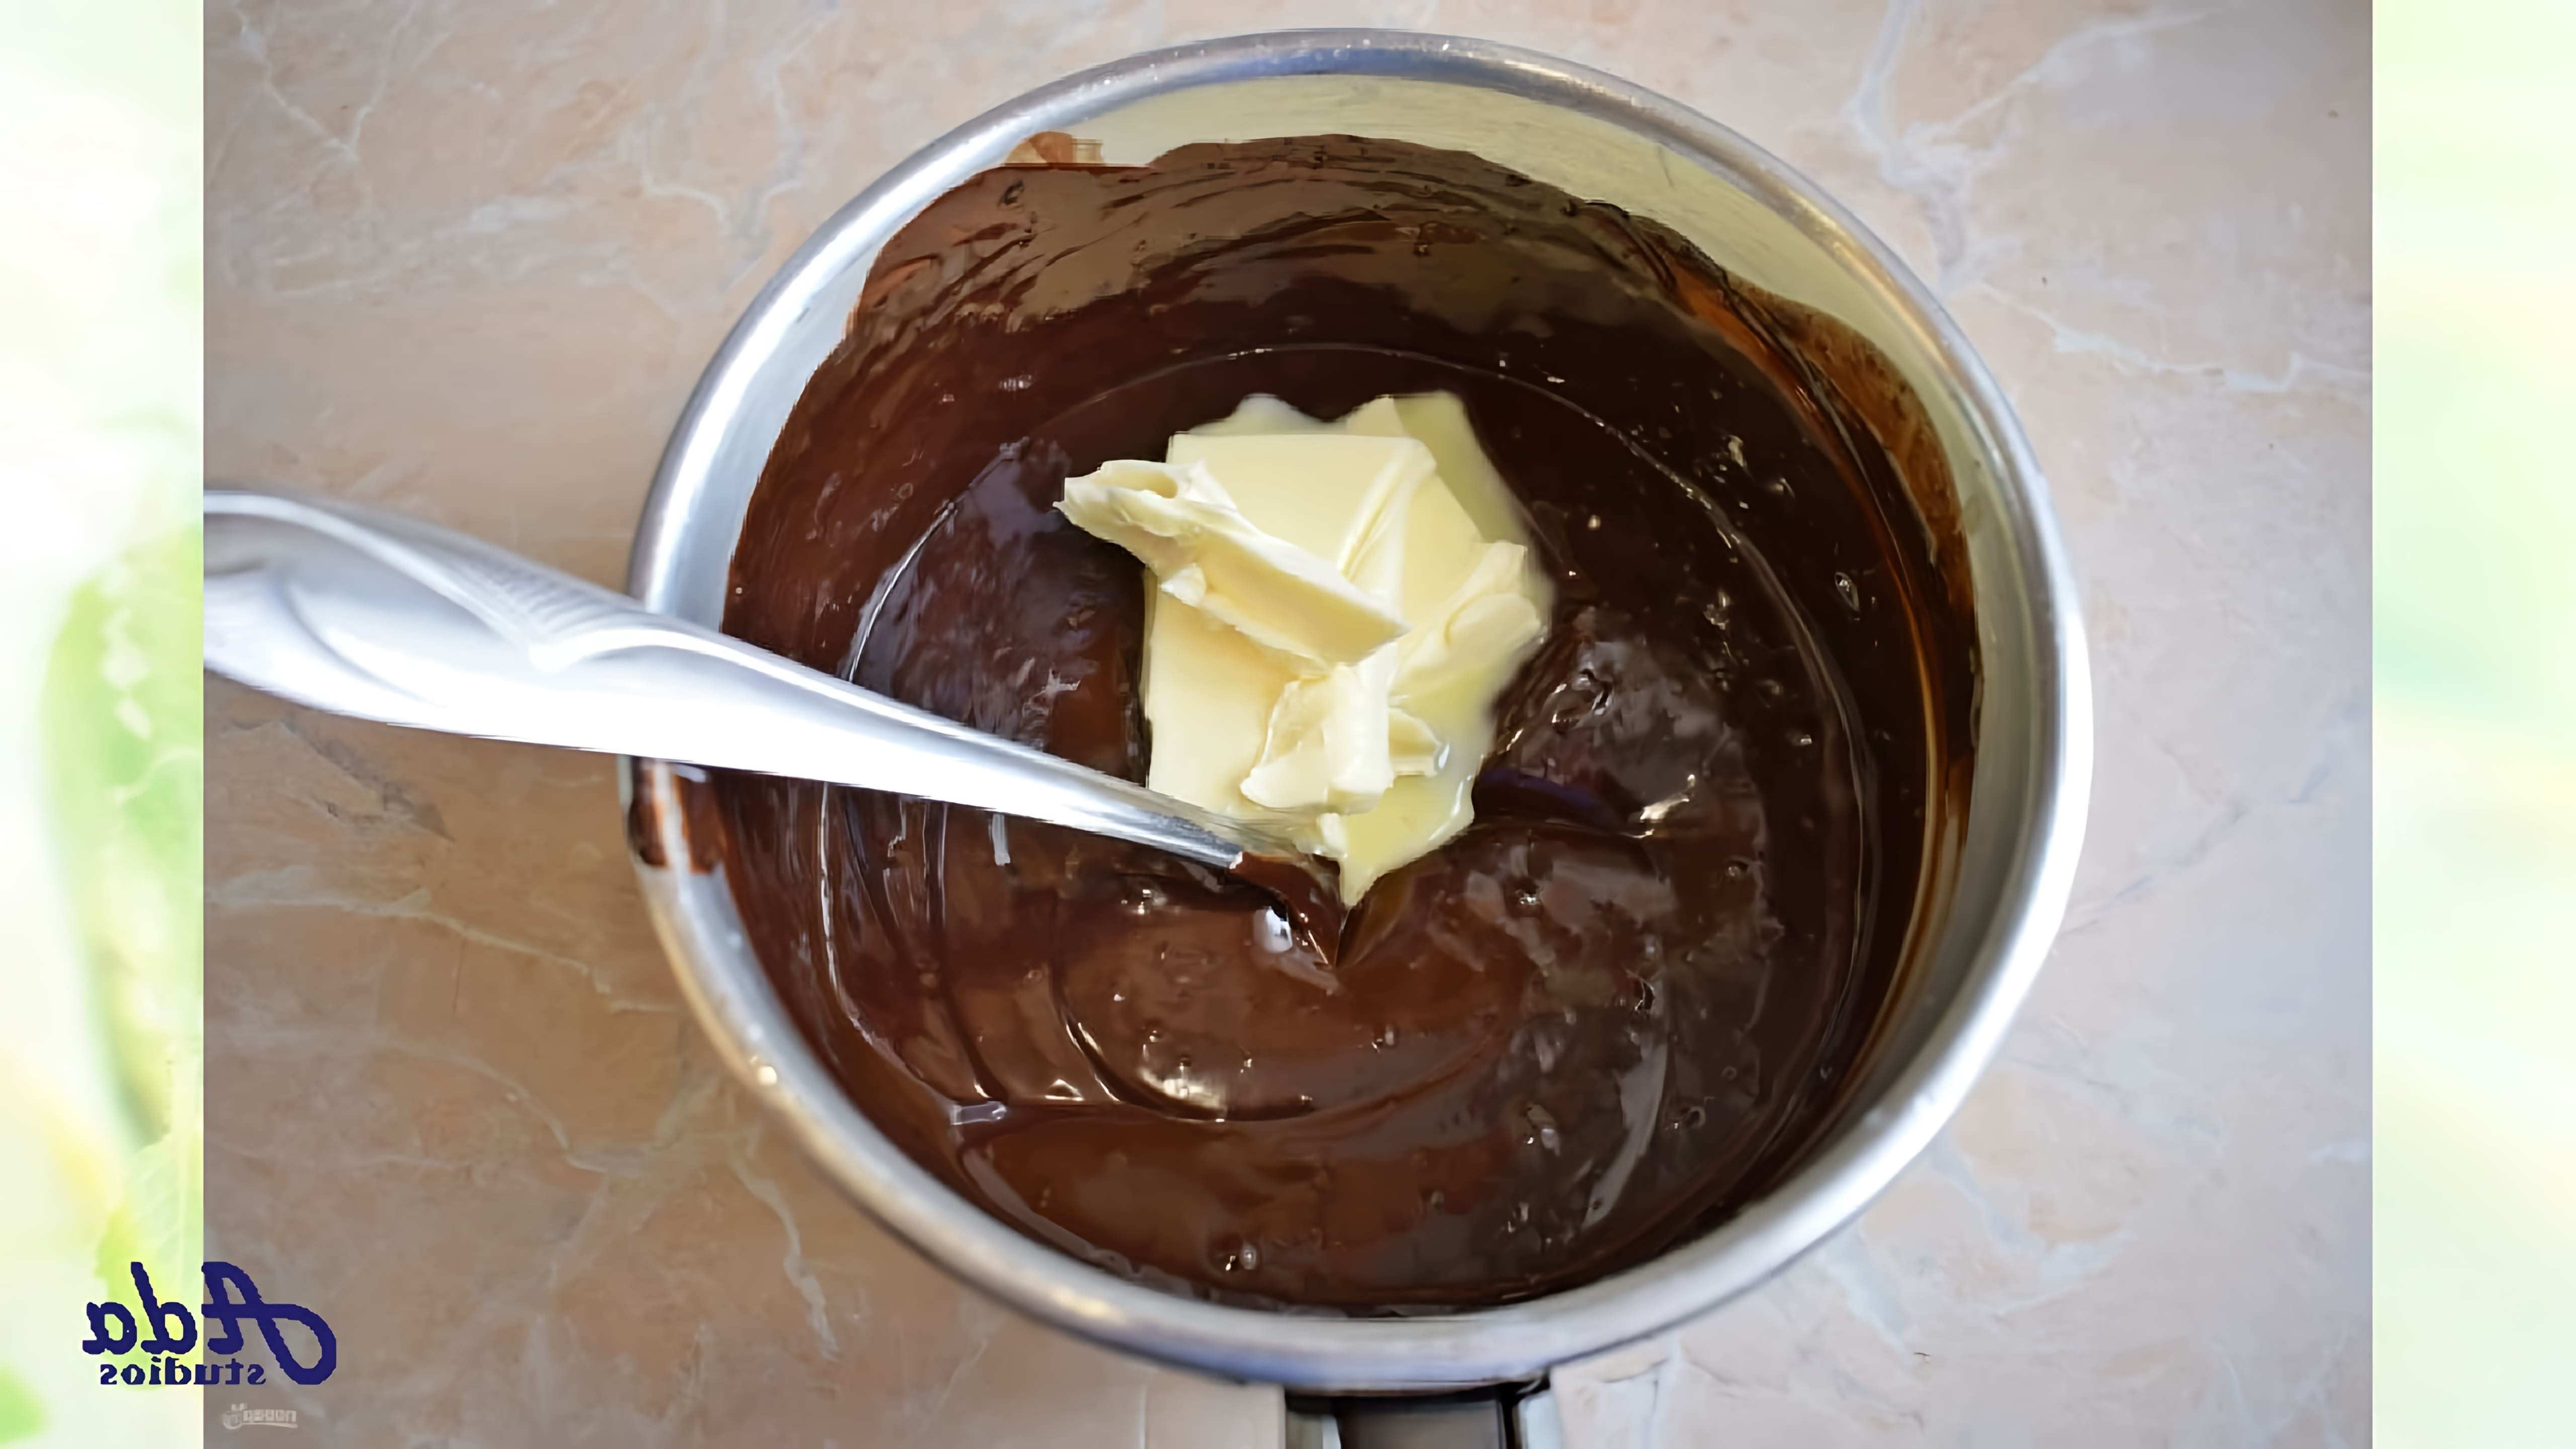 В этом видео демонстрируется рецепт приготовления шоколадной глазури для торта